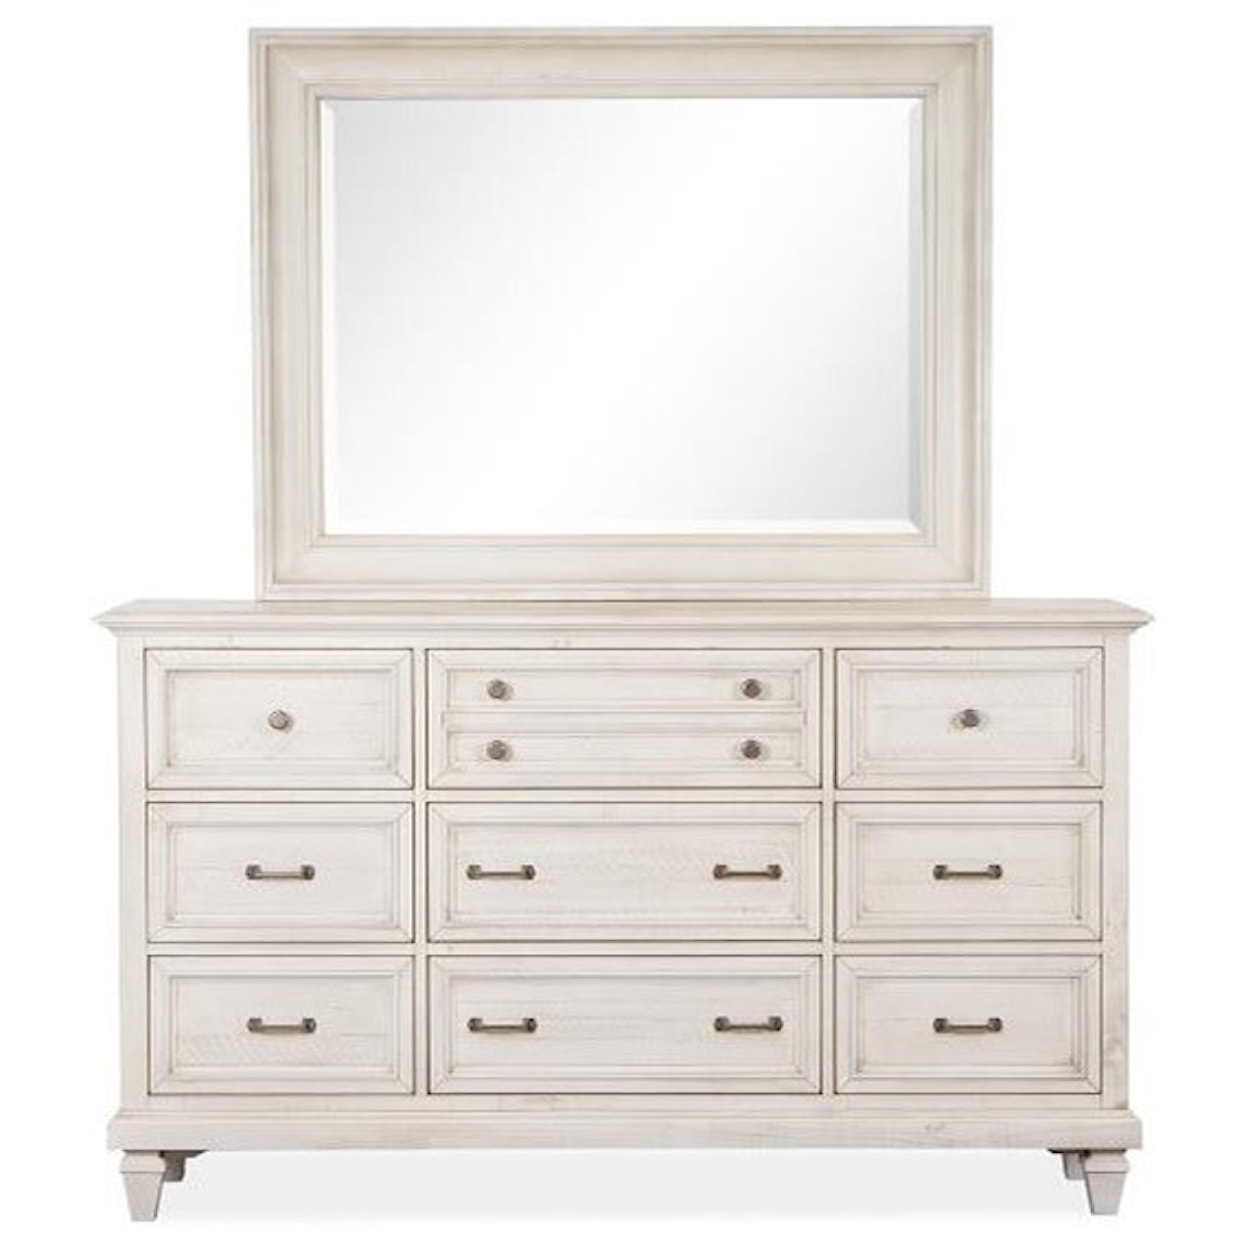 Magnussen Home Newport Bedroom Dresser and Mirror Set